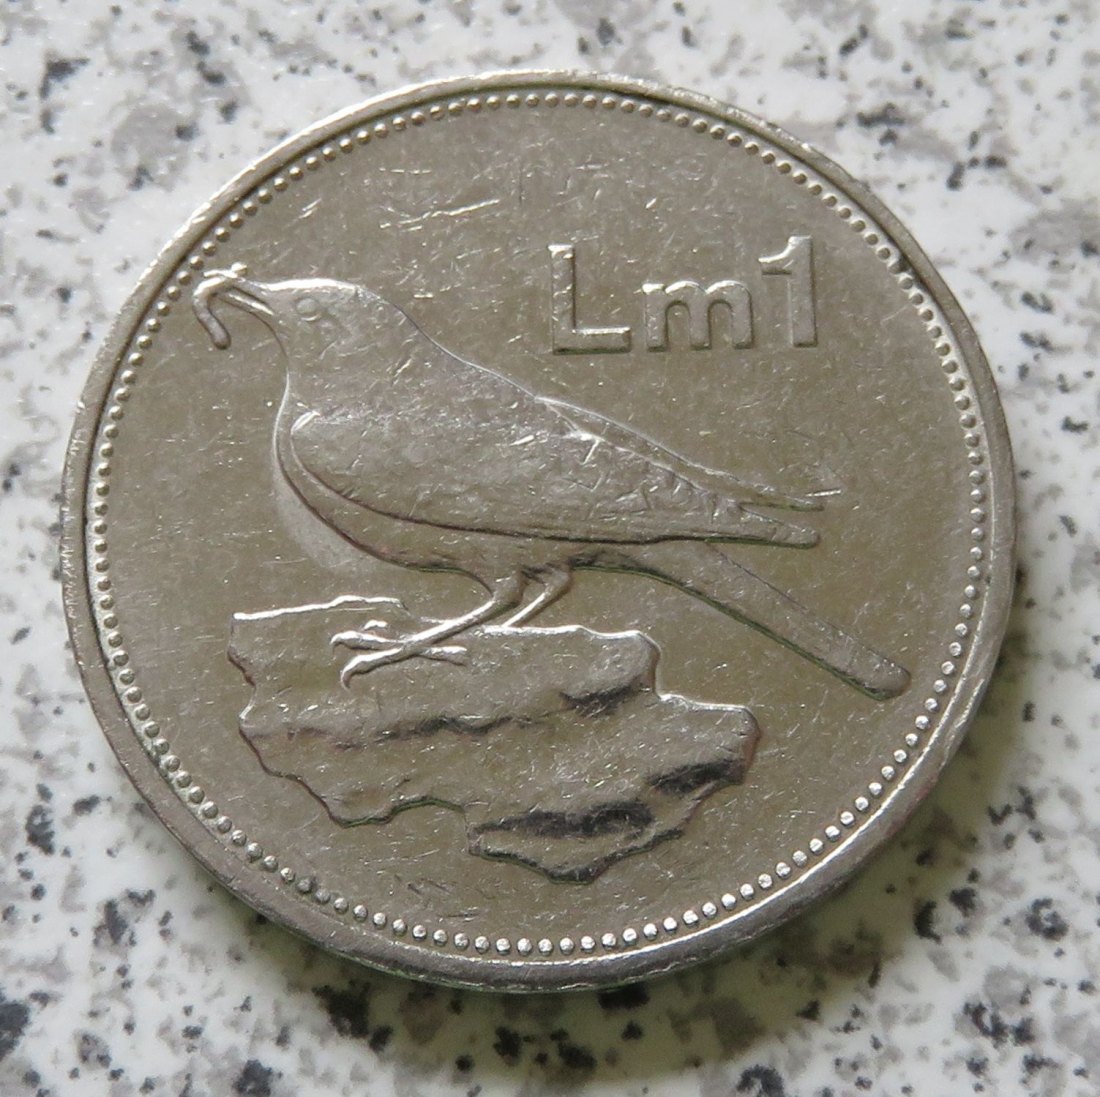  Malta 1 Lira 1994   